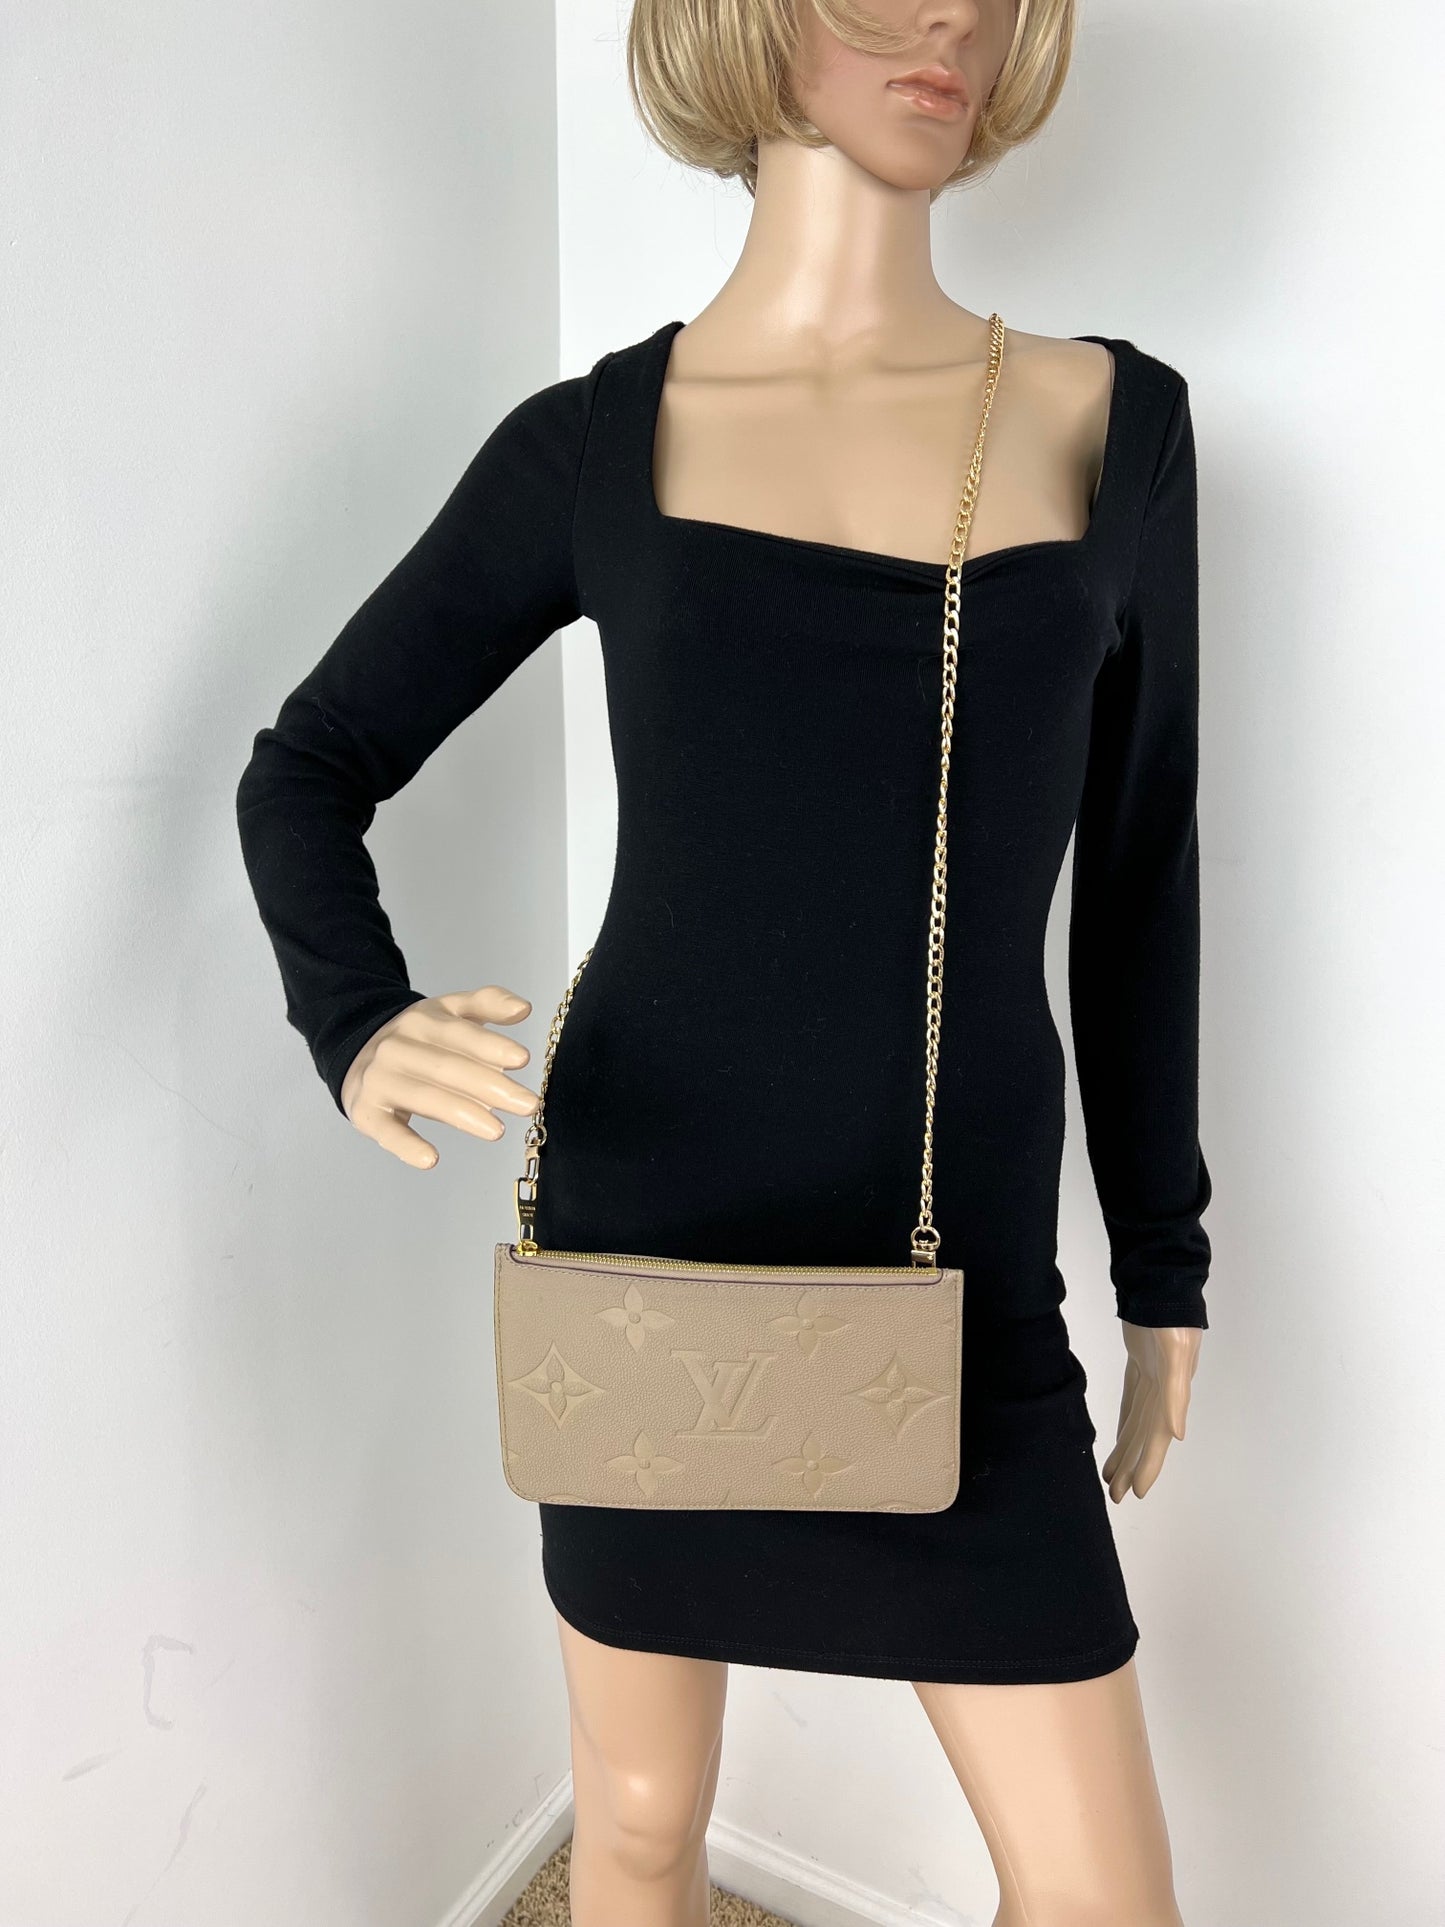 Louis Vuitton Black/Beige Monogram Leather Double Zip Pochette Bag